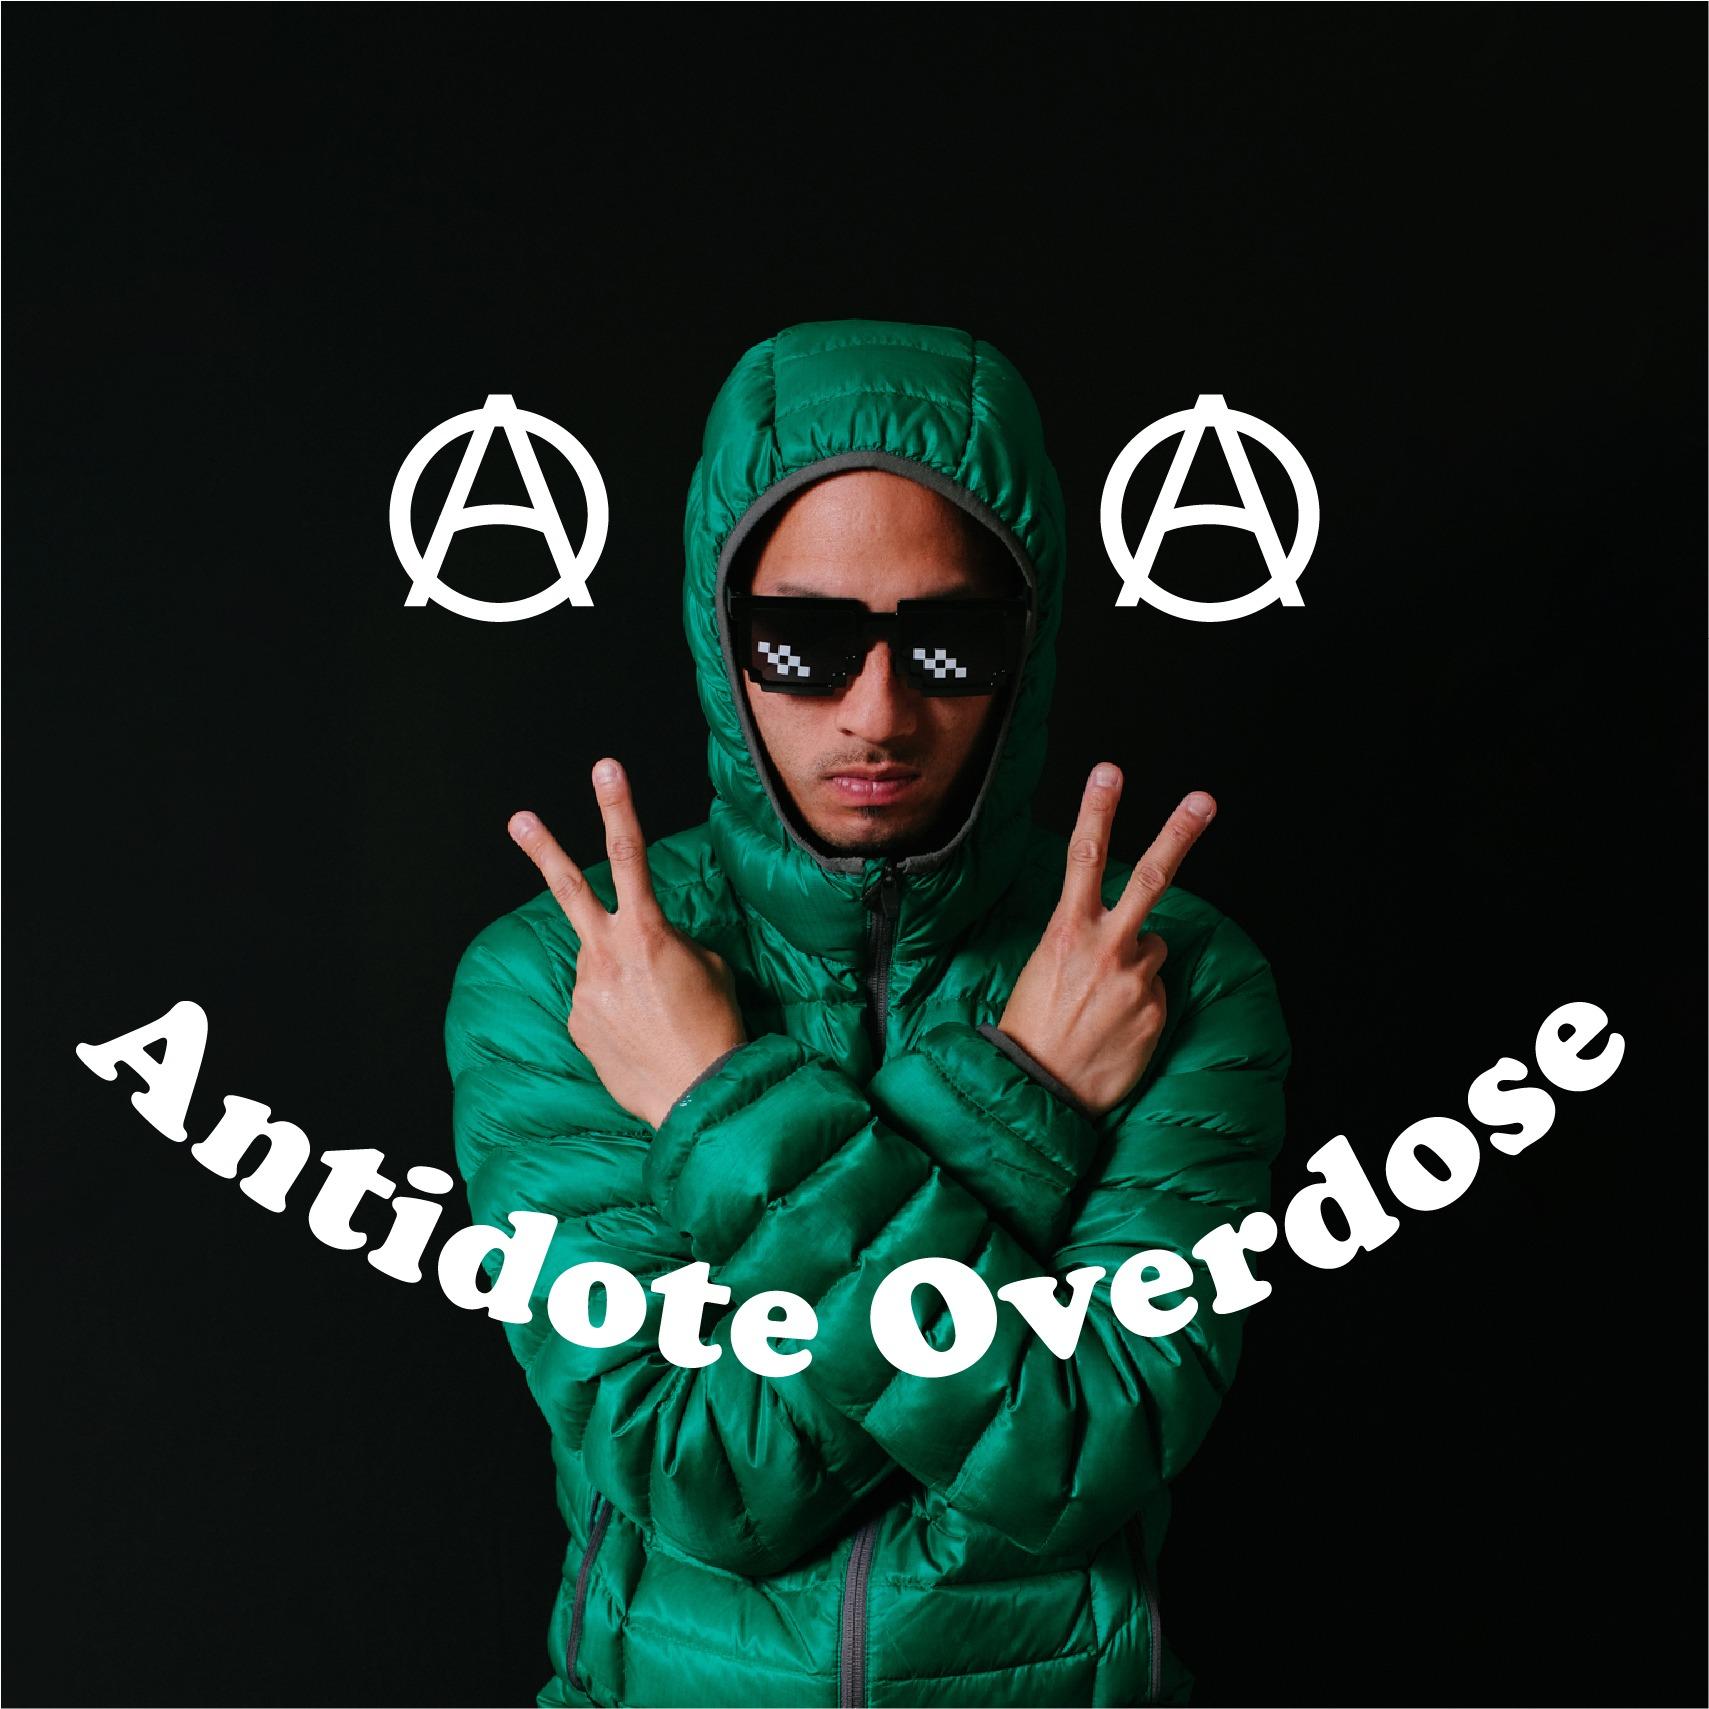 Antidote Overdose